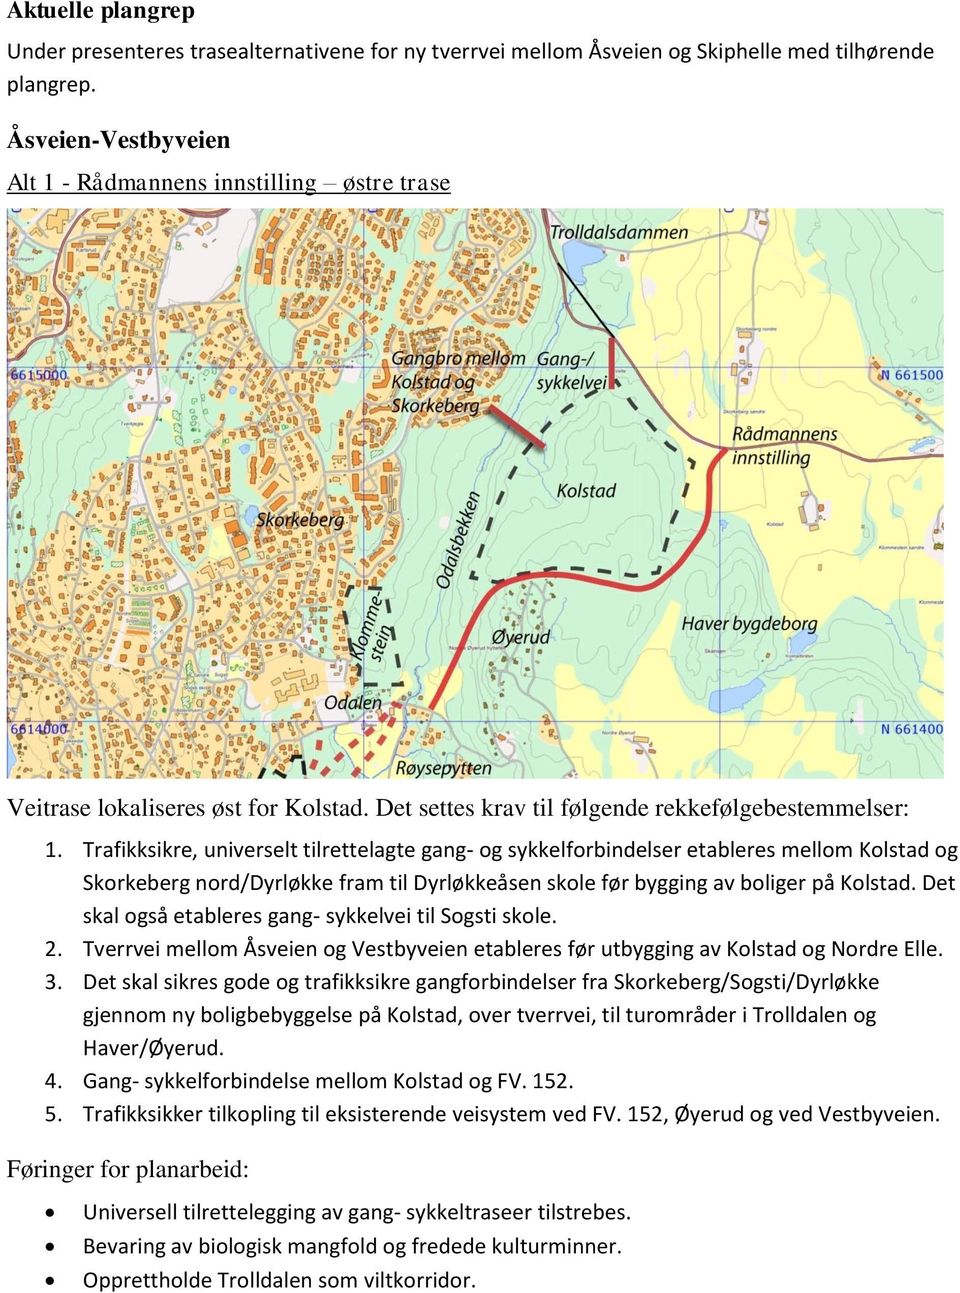 Trafikksikre, universelt tilrettelagte gang- og sykkelforbindelser etableres mellom Kolstad og Skorkeberg nord/dyrløkke fram til Dyrløkkeåsen skole før bygging av boliger på Kolstad.